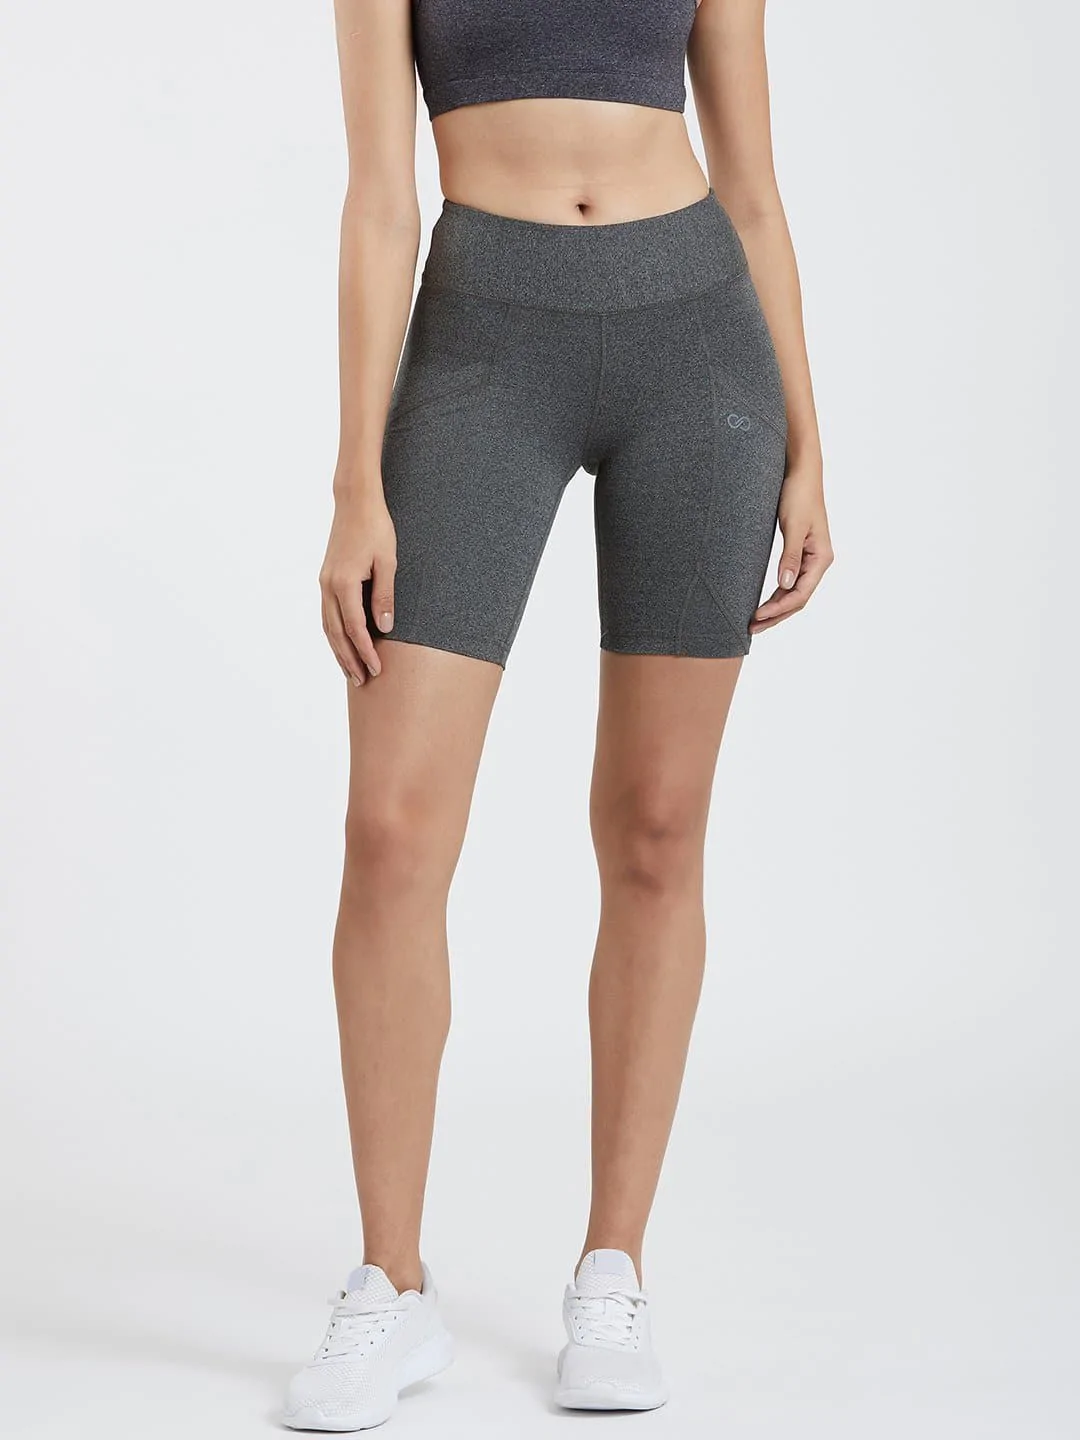 Women's shorts charcoal grey